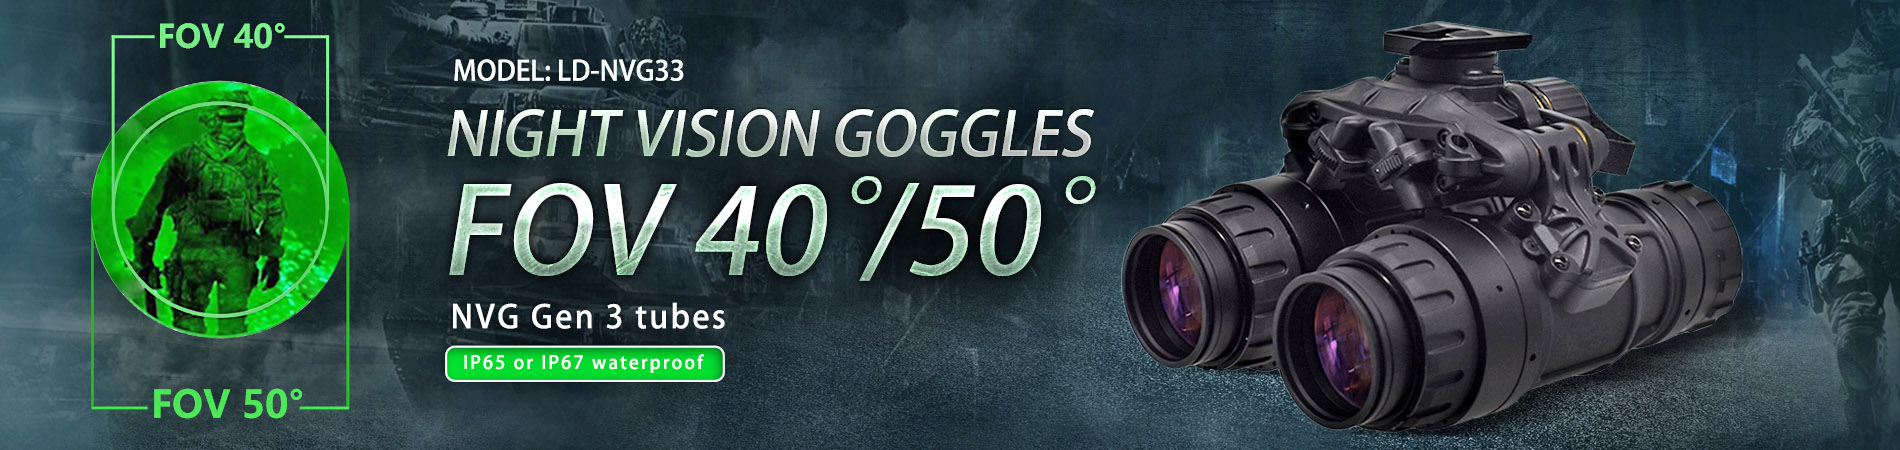 Night Vision Goggles LD-NVG33